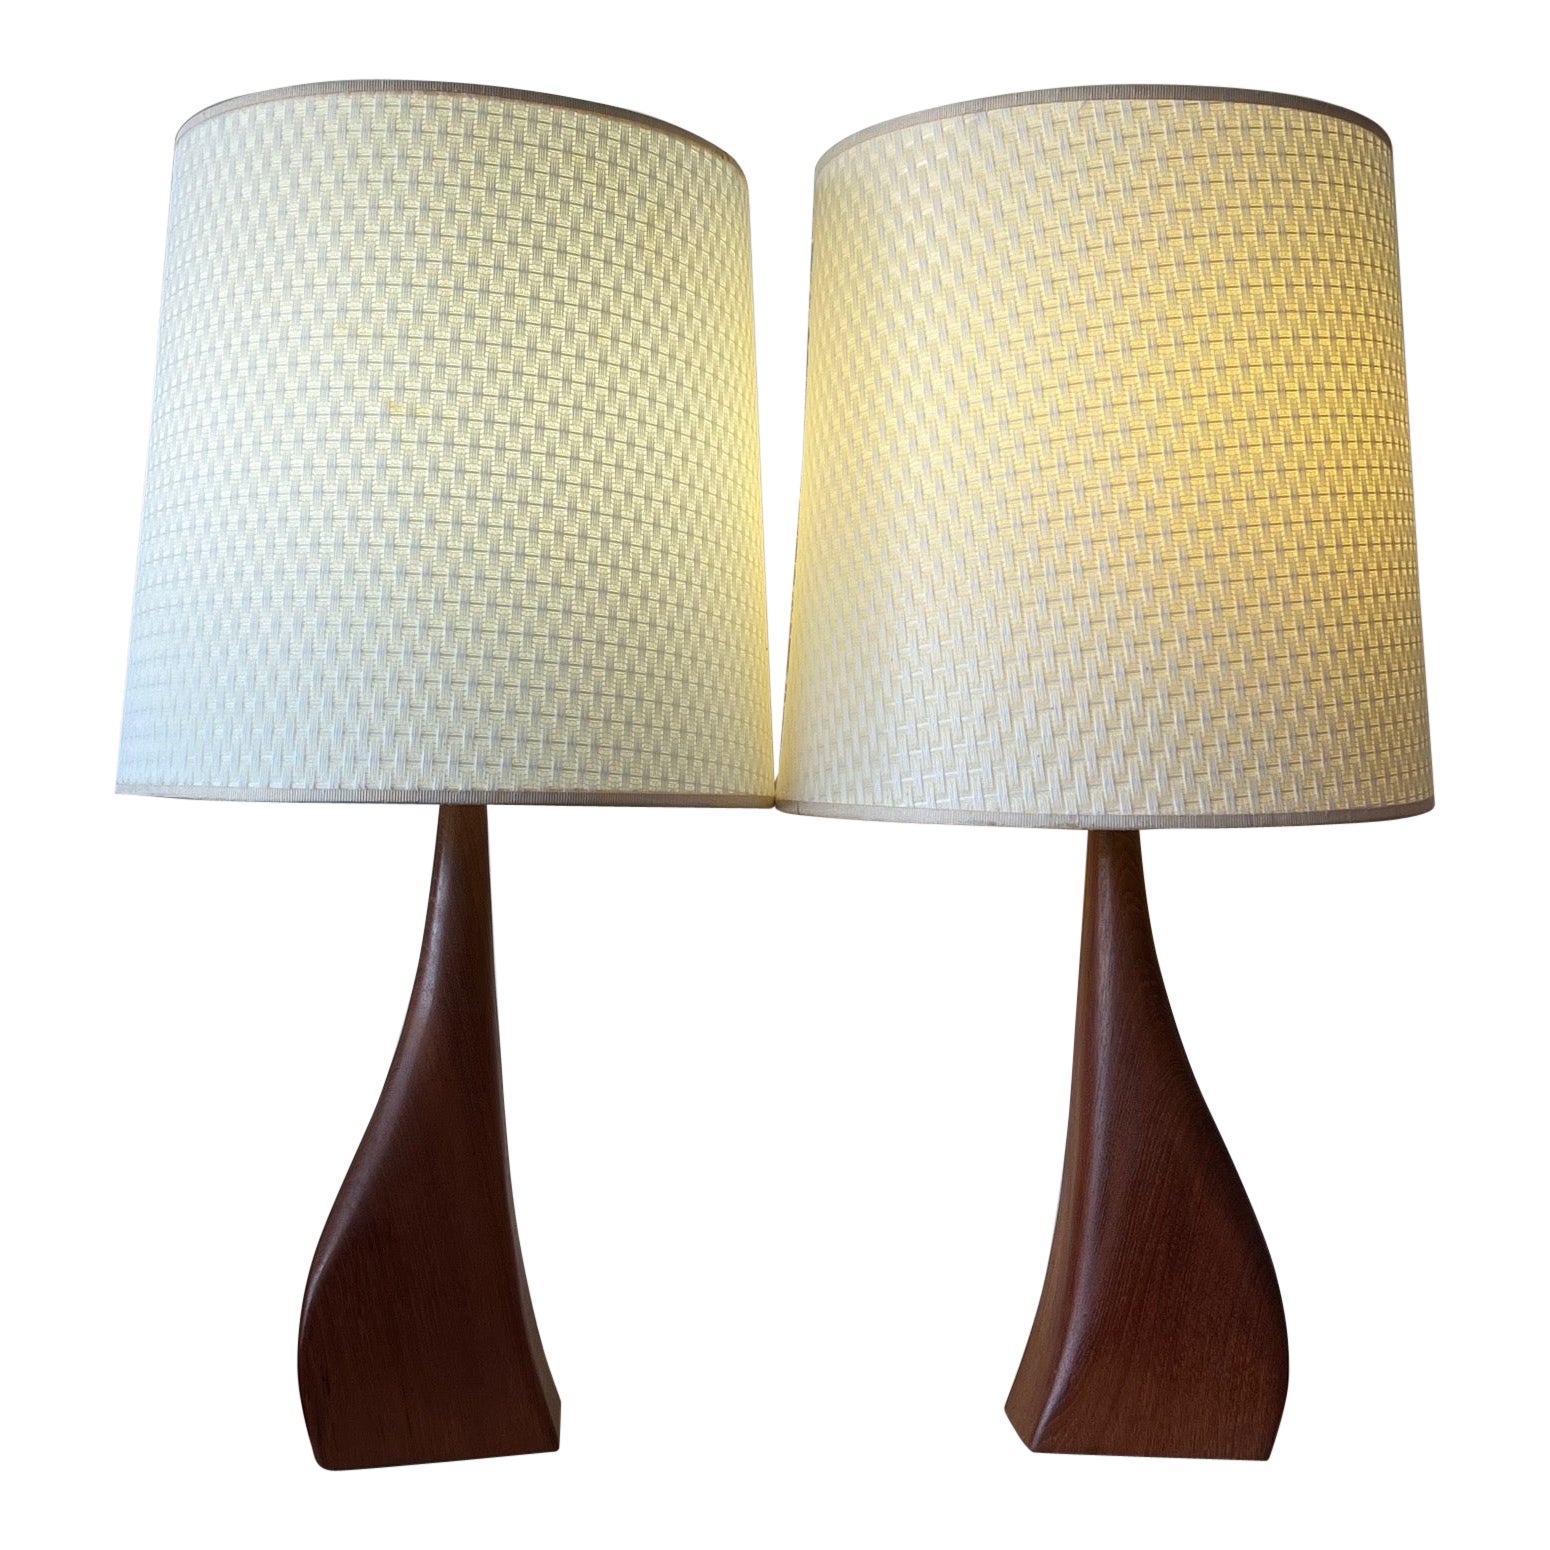  Magnifique paire de lampes modernes danoises en teck biomorphe de Johannes Aasbjerg